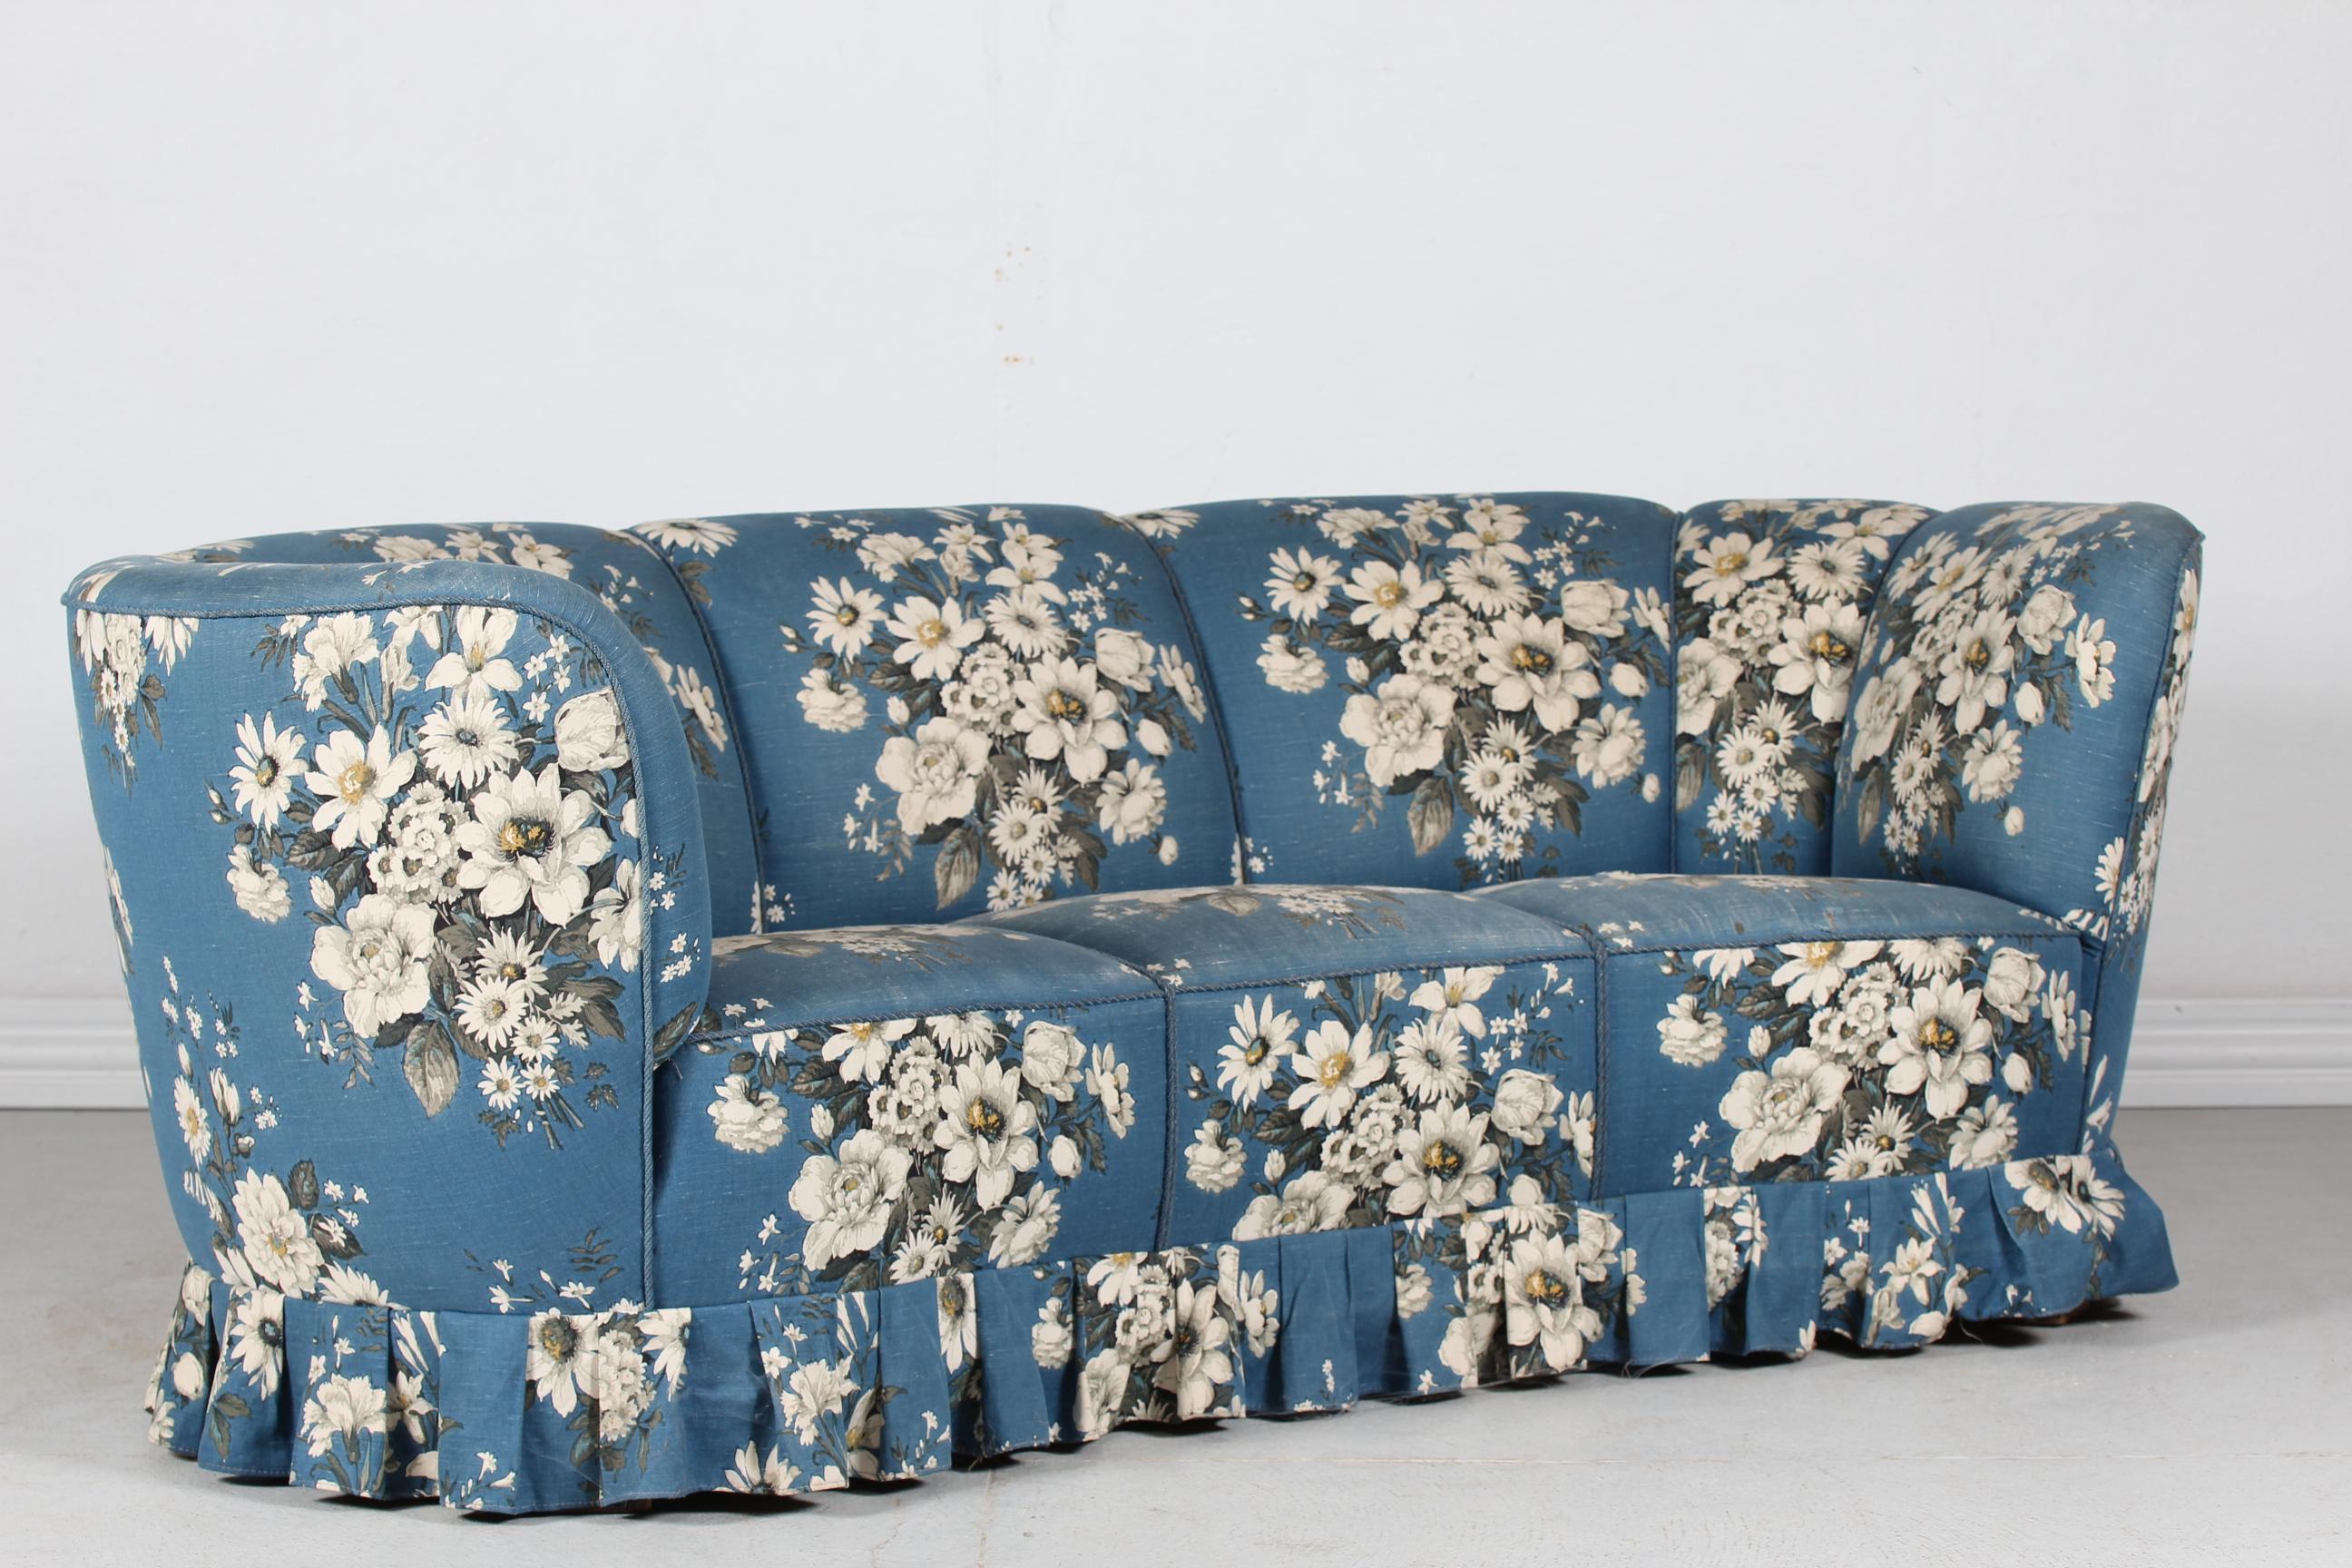 Canapé ou sofa incurvé dans le style de Fritz Hansen des années 1940.
Les pieds sont en bois de hêtre teinté foncé et le canapé est recouvert d'un tissu floral dans les tons bleu et blanc.
Fabriqué par un ébéniste danois dans les années